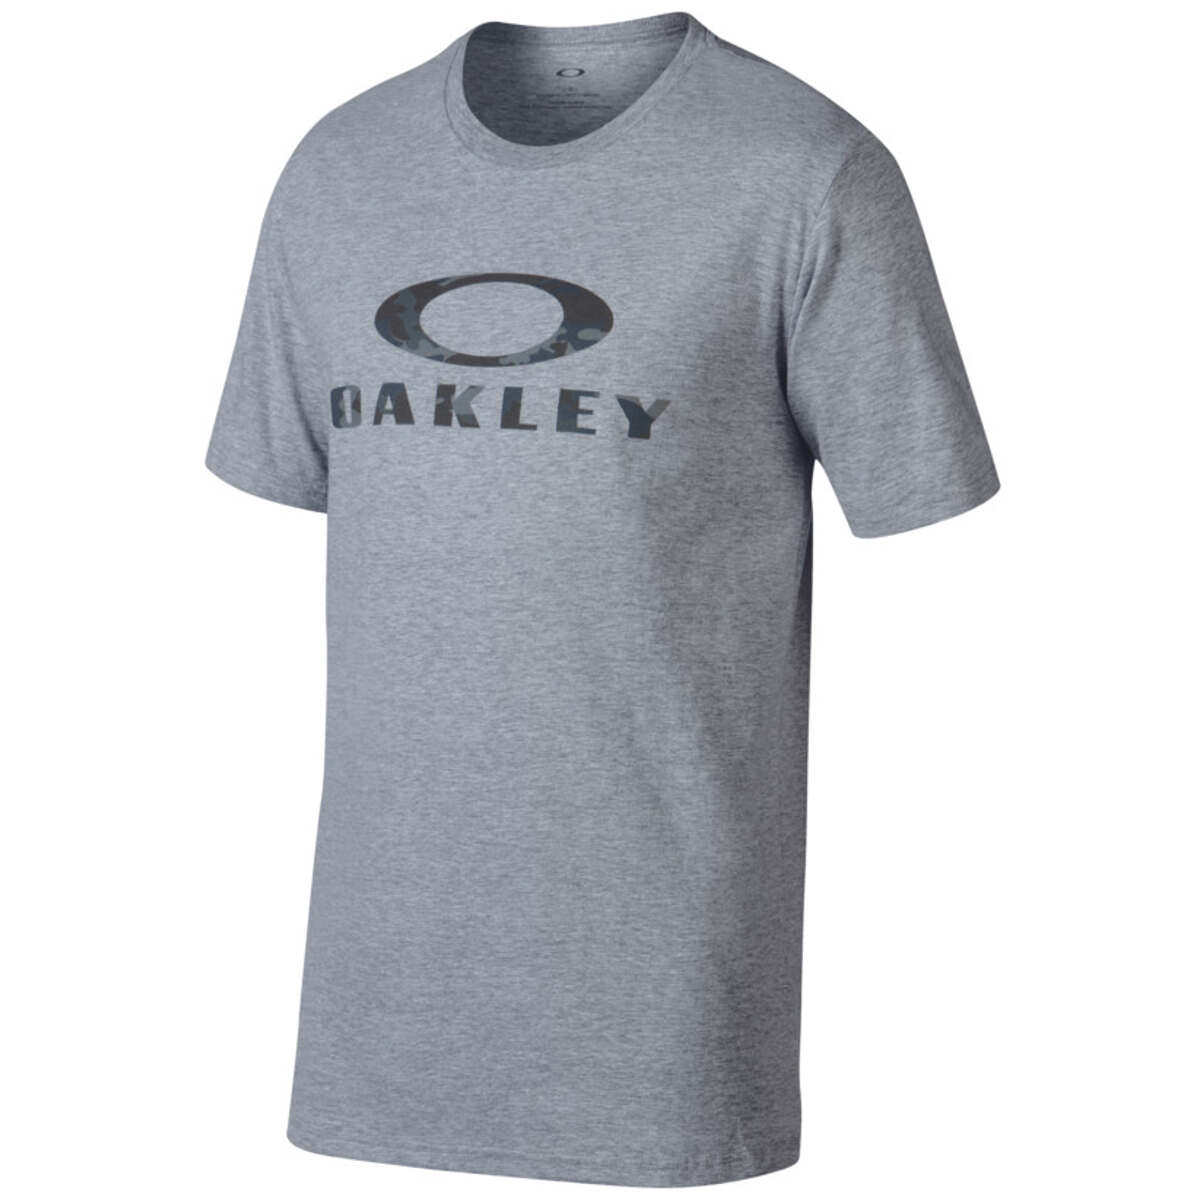 Oakley T-Shirt 50-Stealth II Athletic Heather Grey